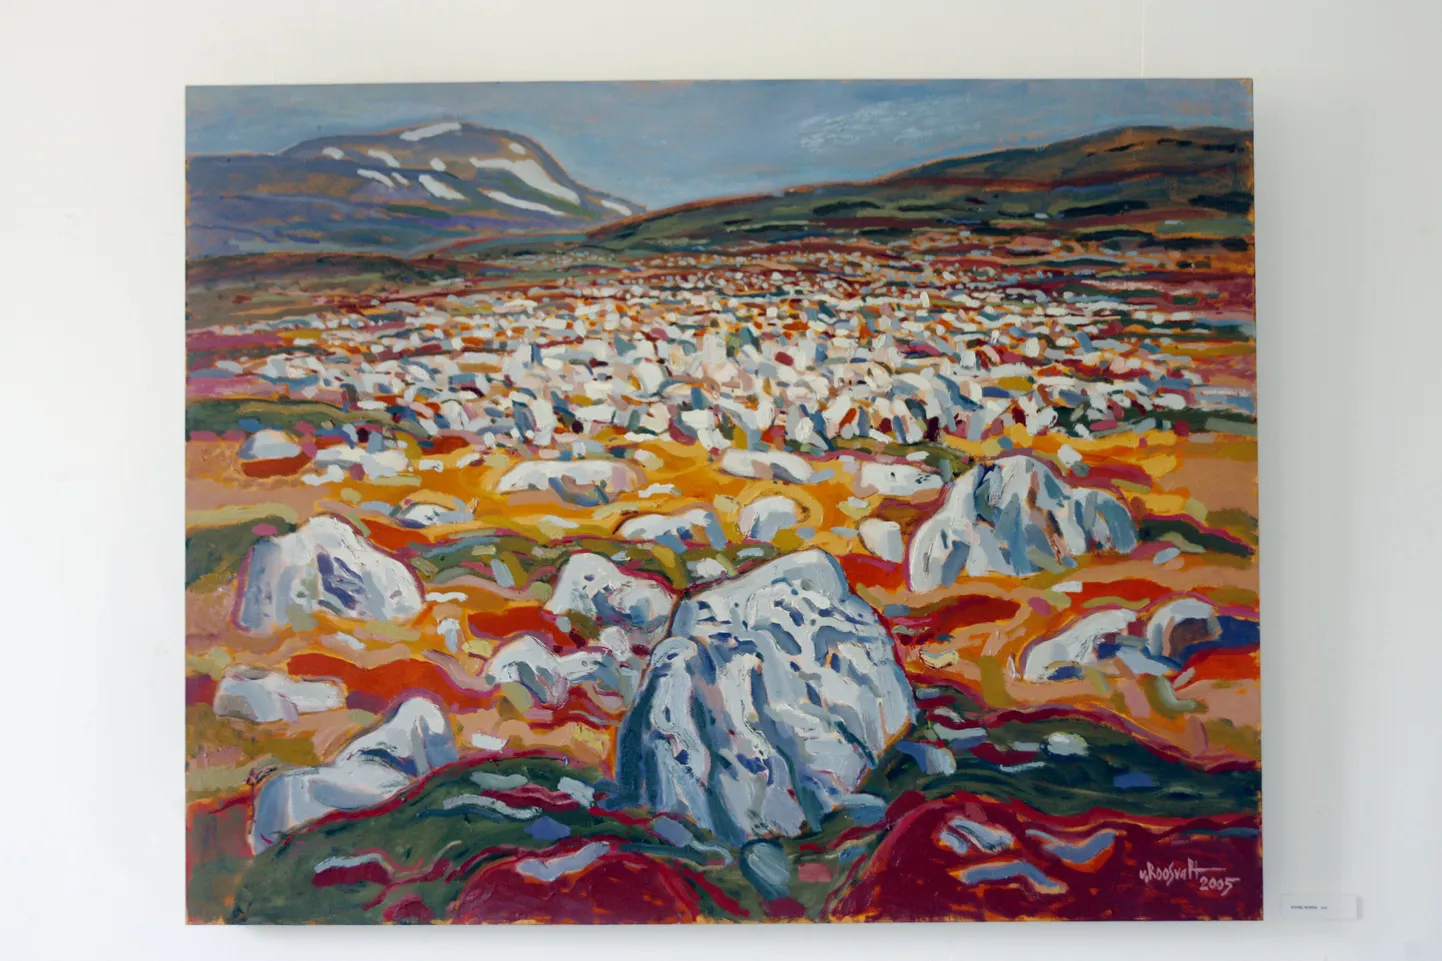 Uno Roosvalti maal "Kivine Norra", 2005.